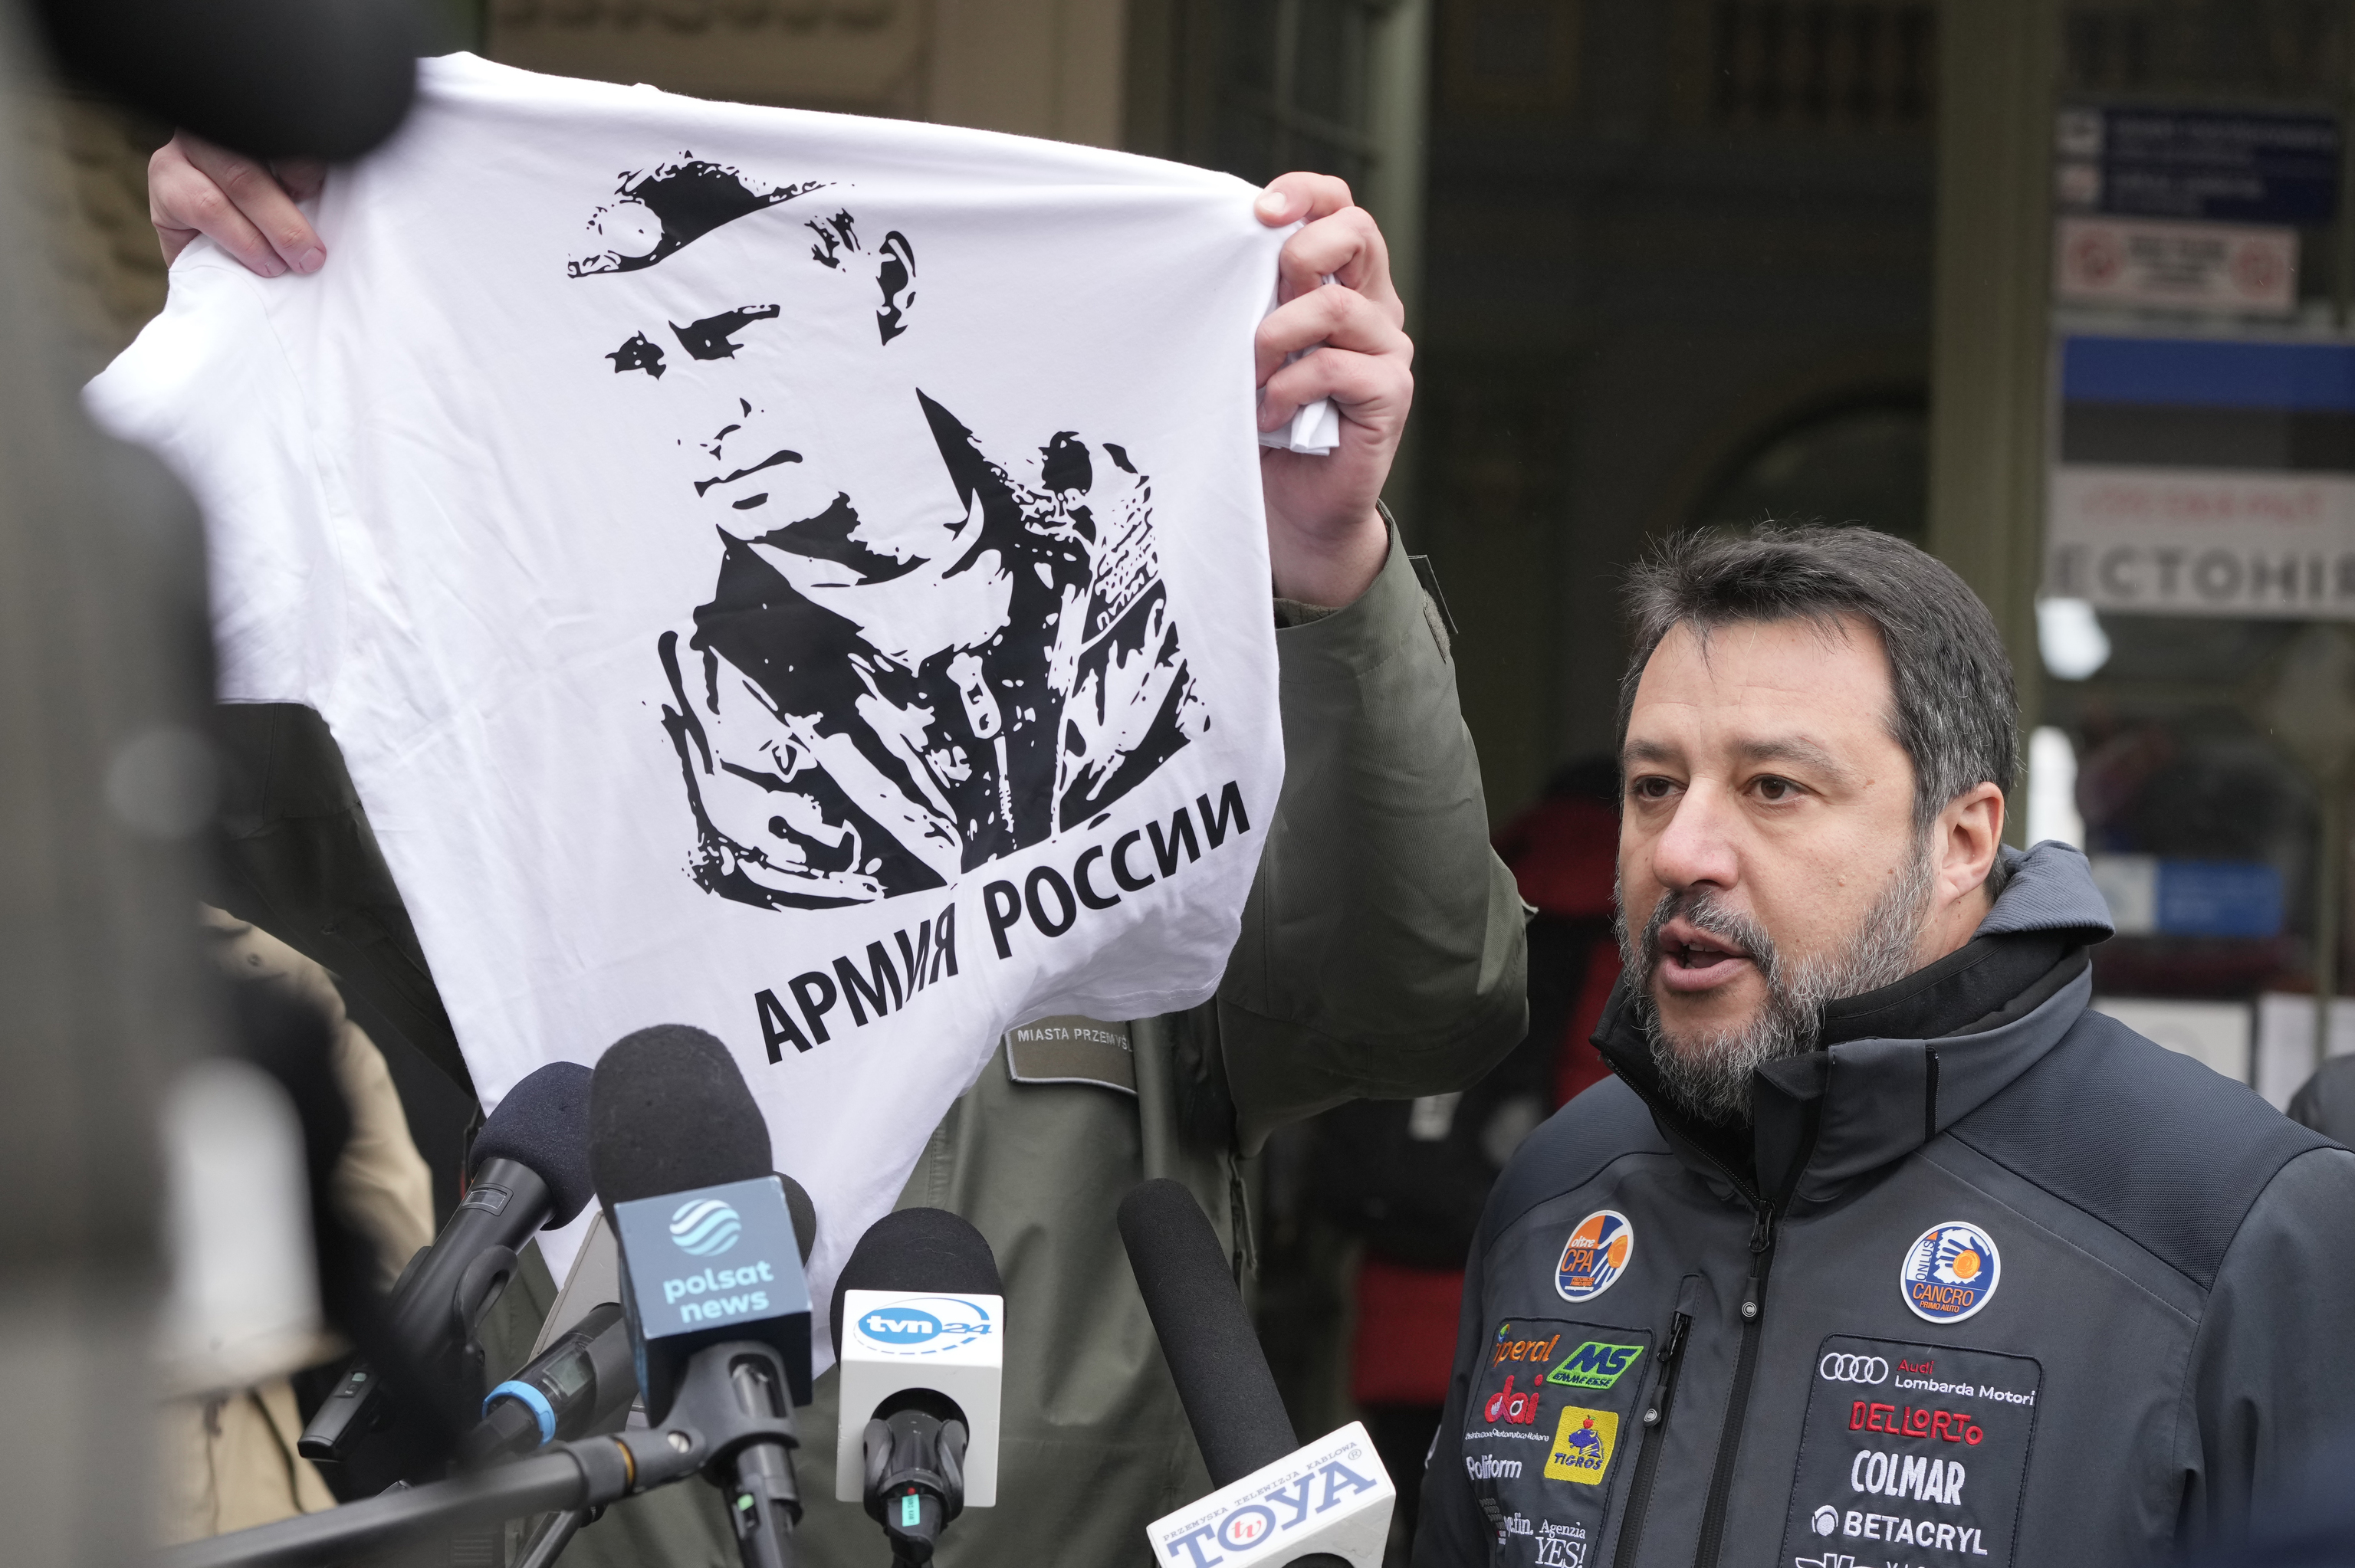 El alcalde de Przemysl muestra una camiseta de apoyo a Putin aludiendo al pasado respaldo de Salvini al presidente ruso